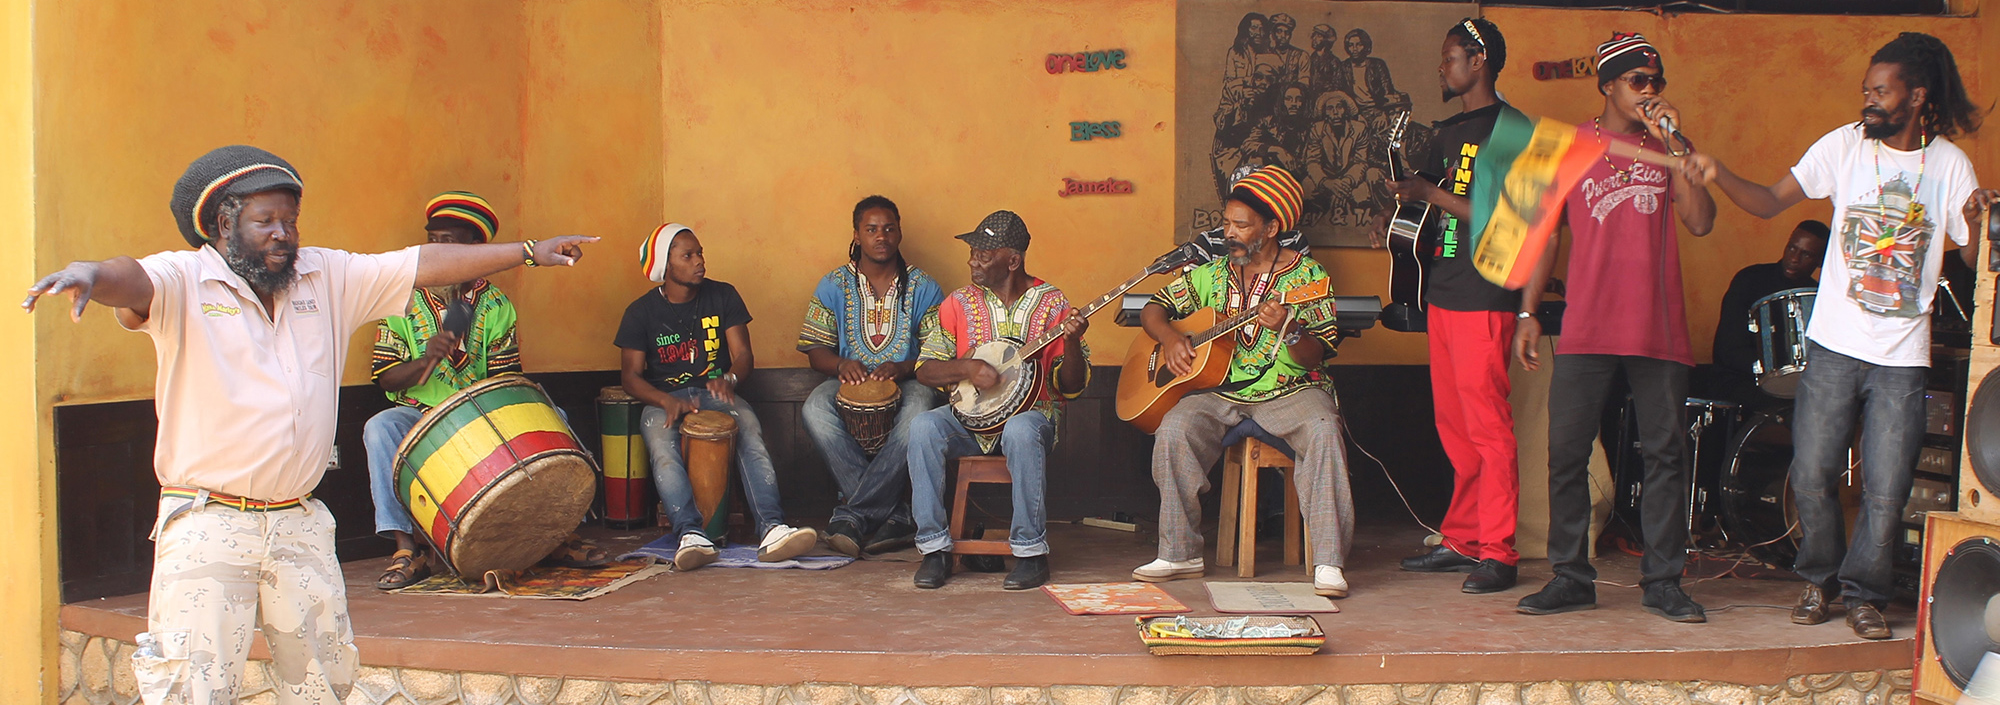 Musiker auf einer Bühne in Nine Miles, Jamaica